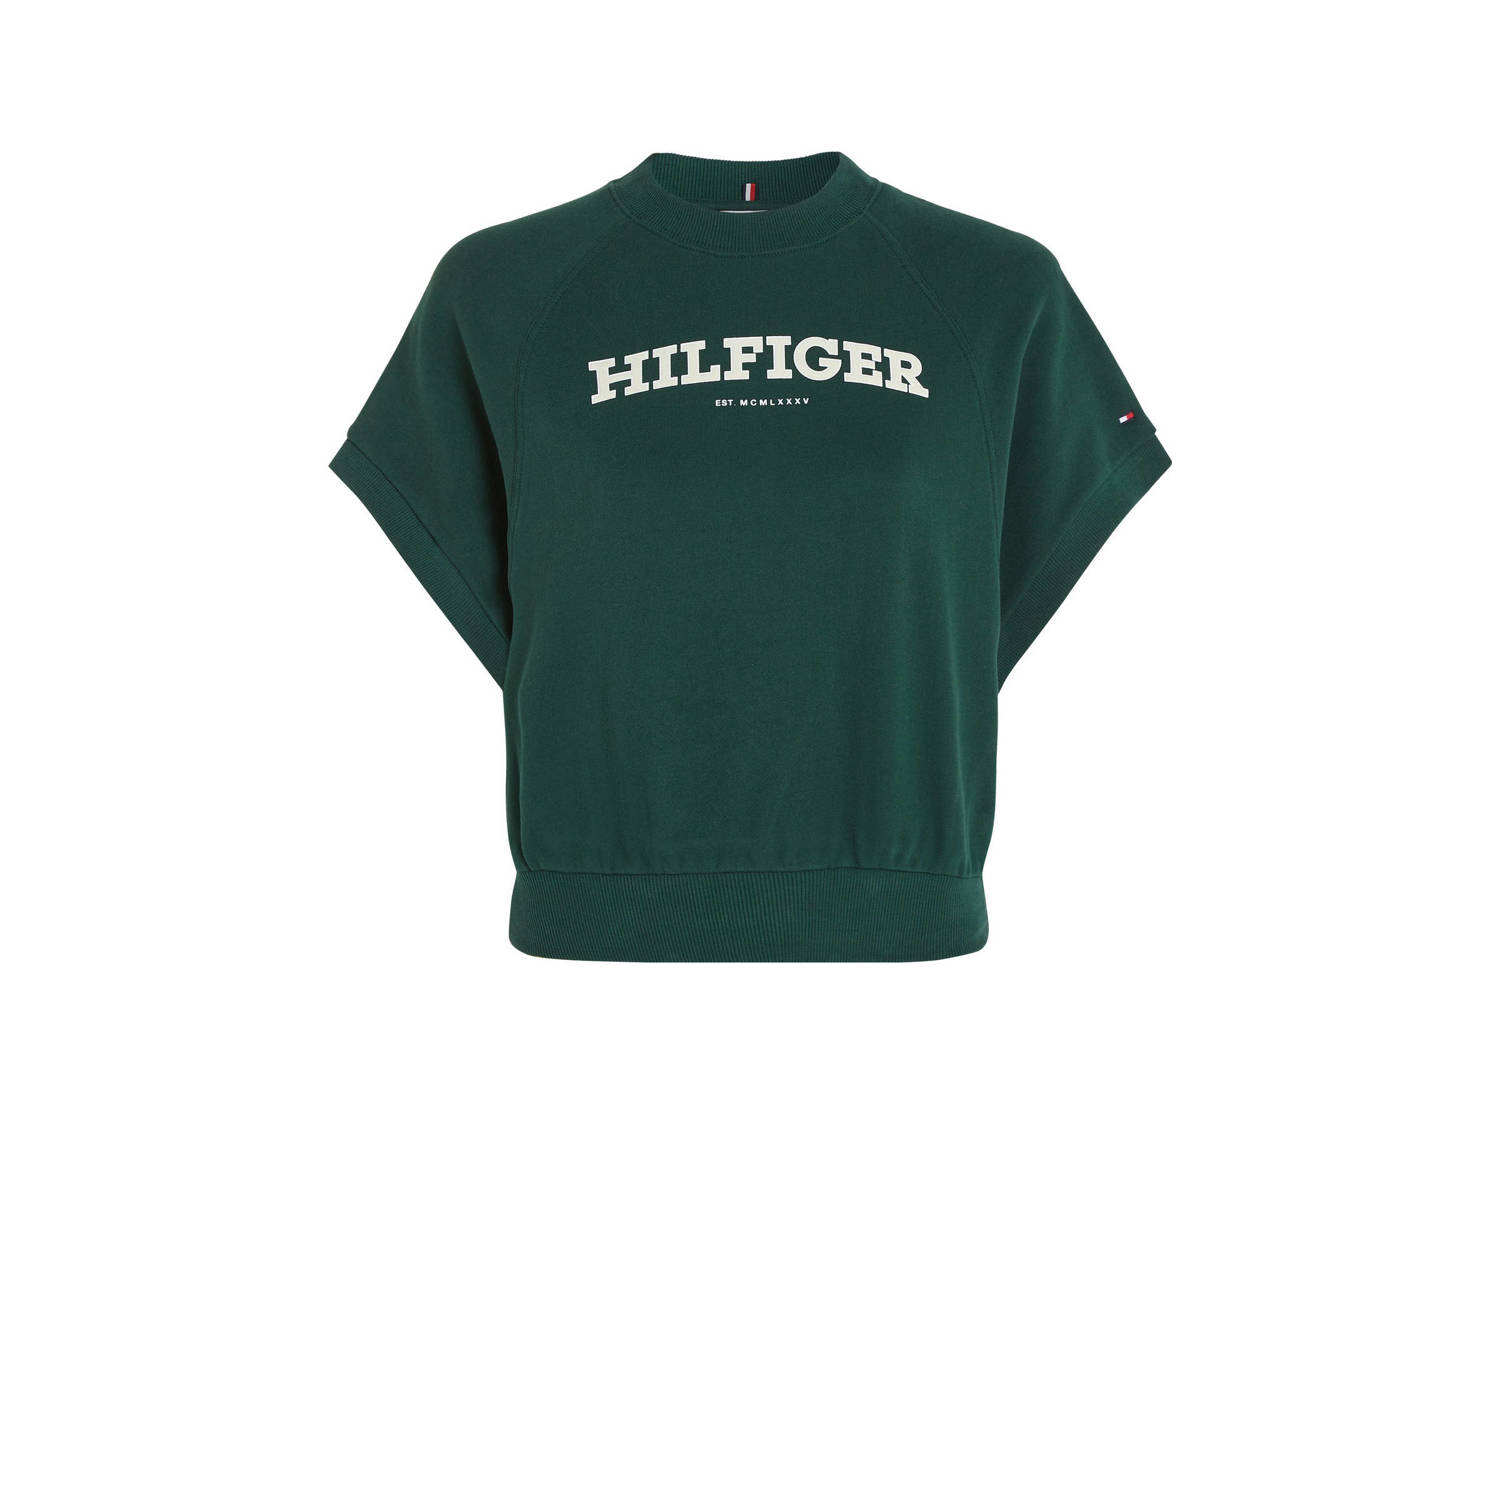 Tommy Hilfiger crop top met logo groen